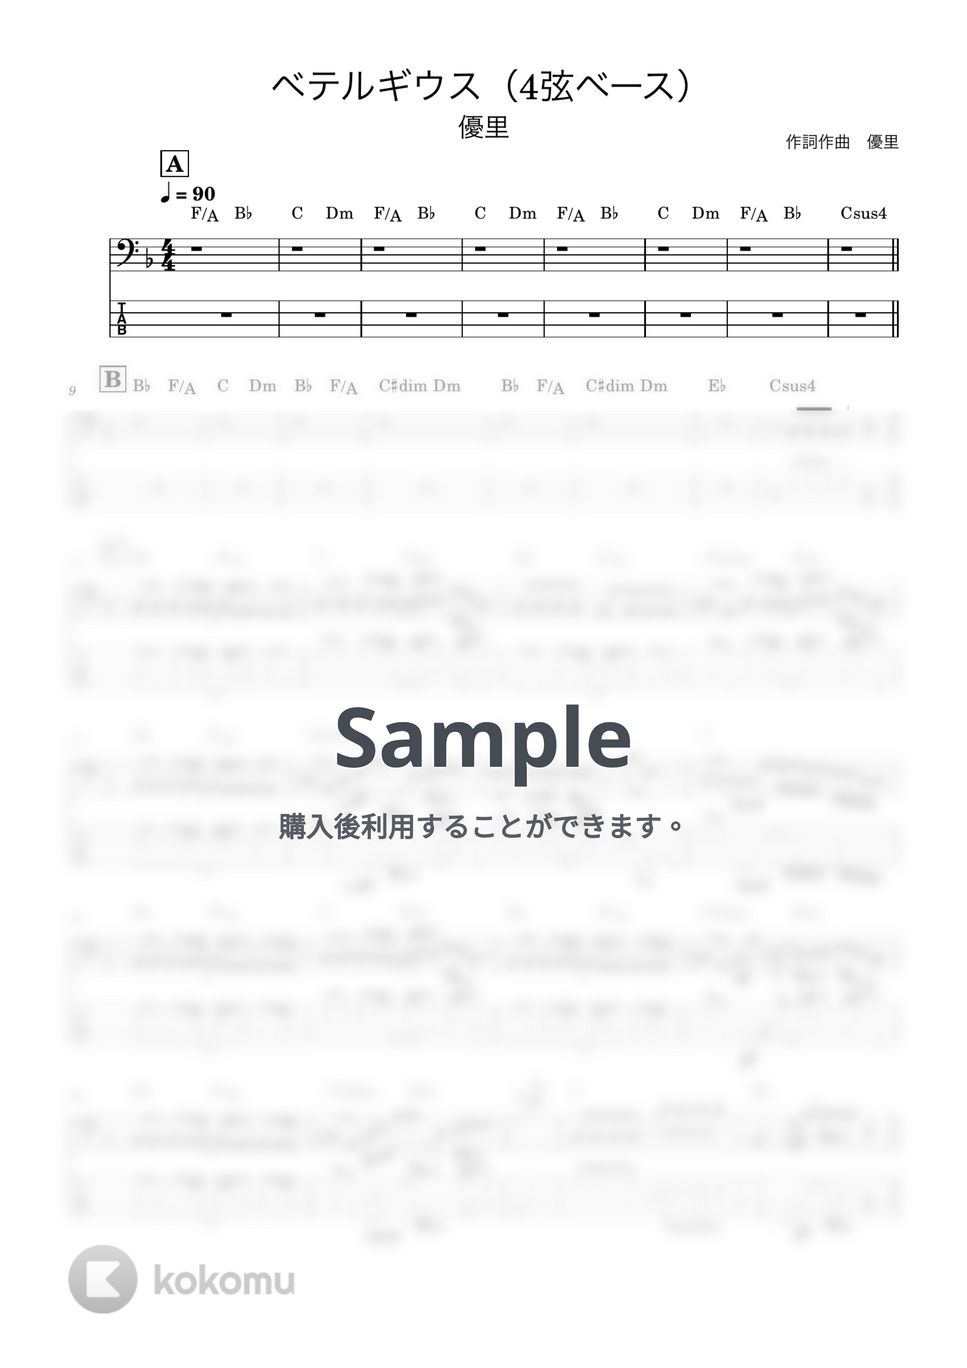 優里 - ベテルギウス (ドラマ『SUPER RICH』主題歌、ベース譜) by Kodai Hojo